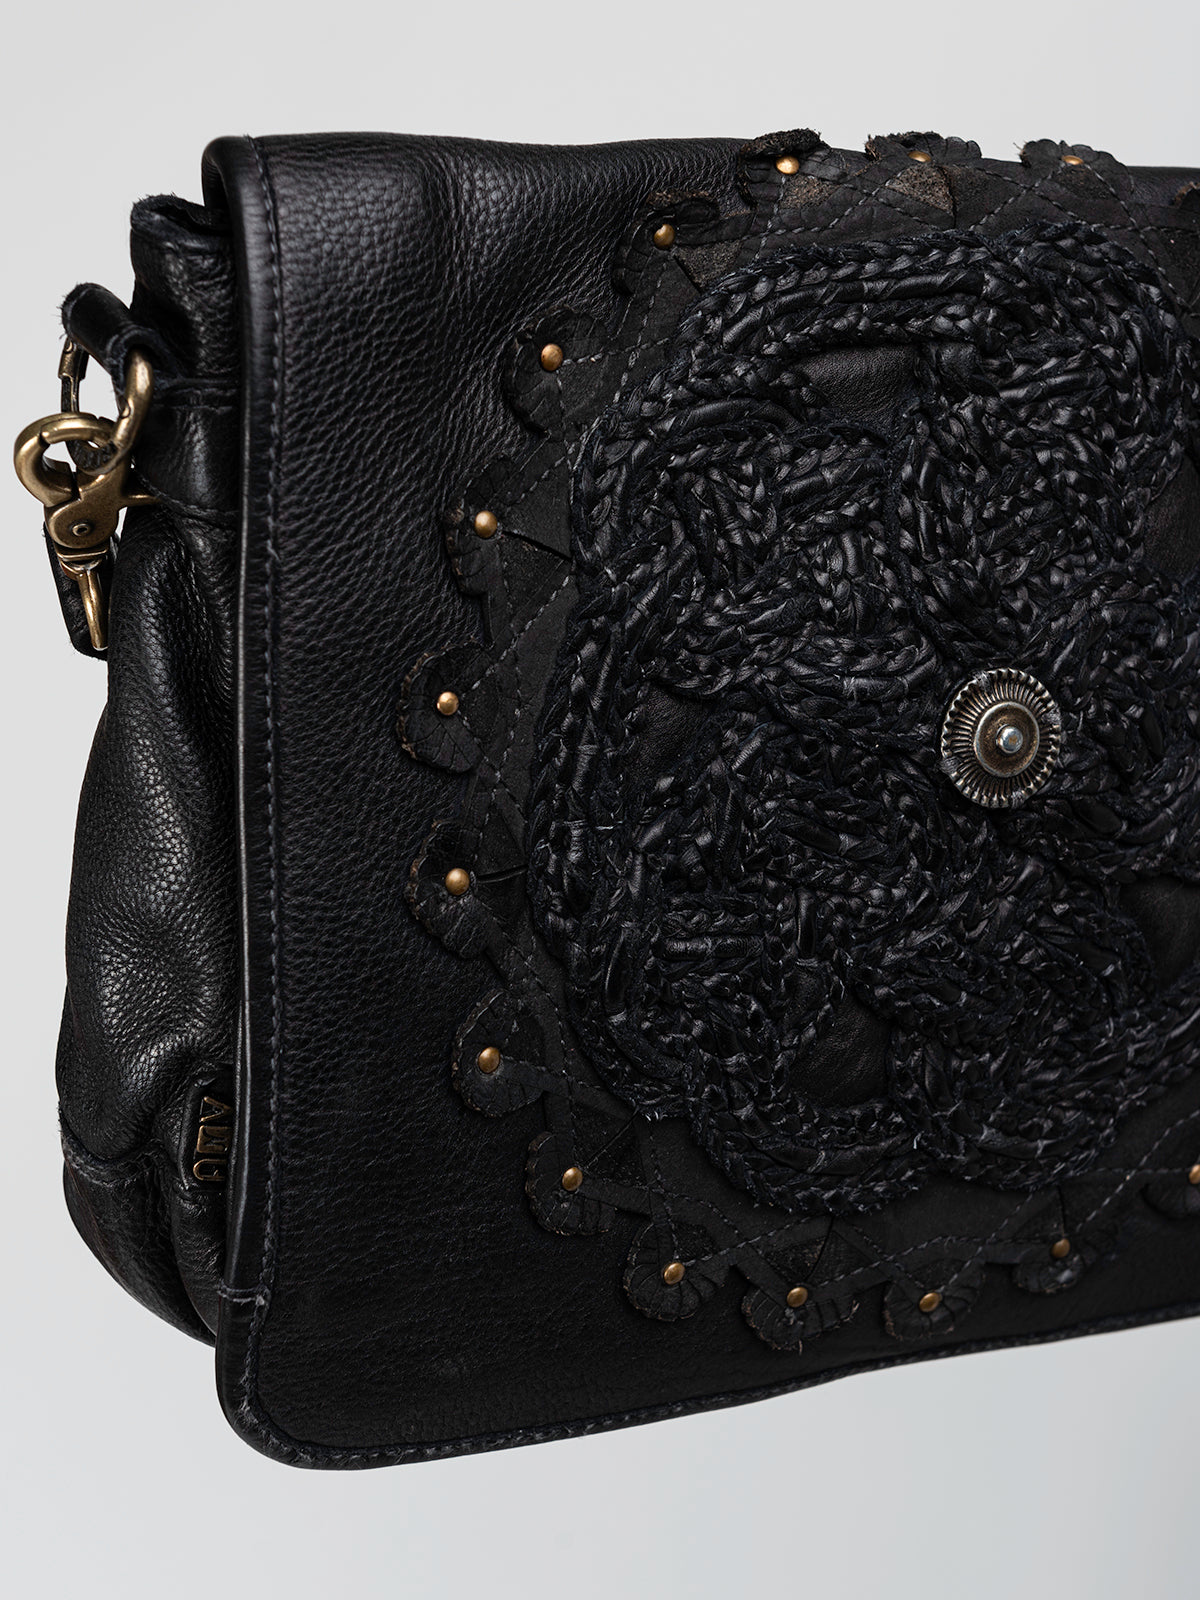 PARMA: Black leather vintage look crossbody bag by Art N Vintage